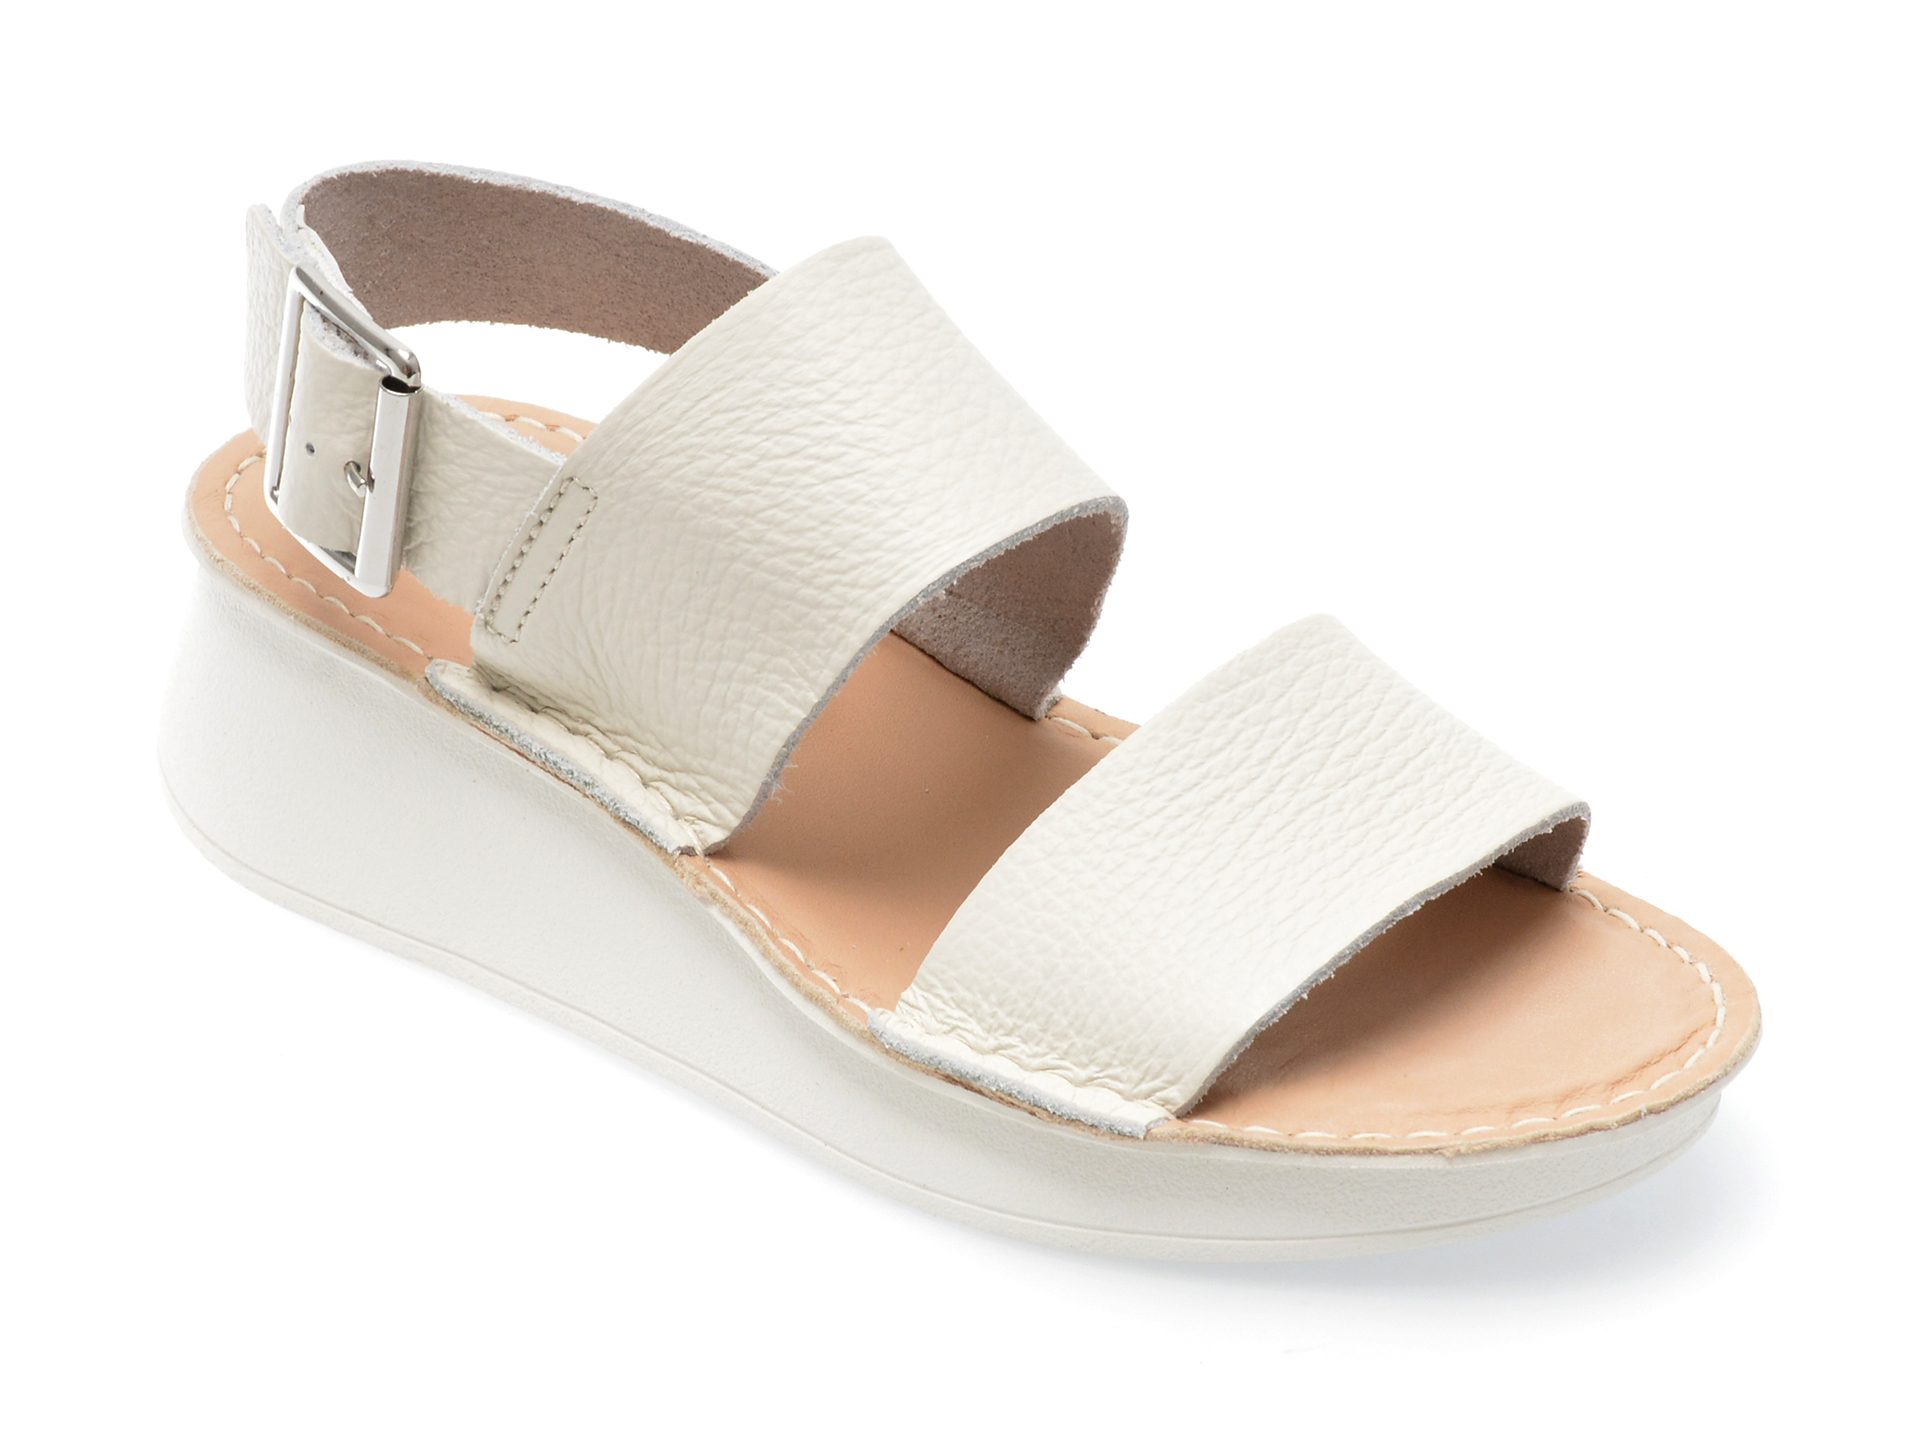 Sandale CLARKS albe, VELHILL STRAP 13-N, din piele naturala Answear 2023-09-28